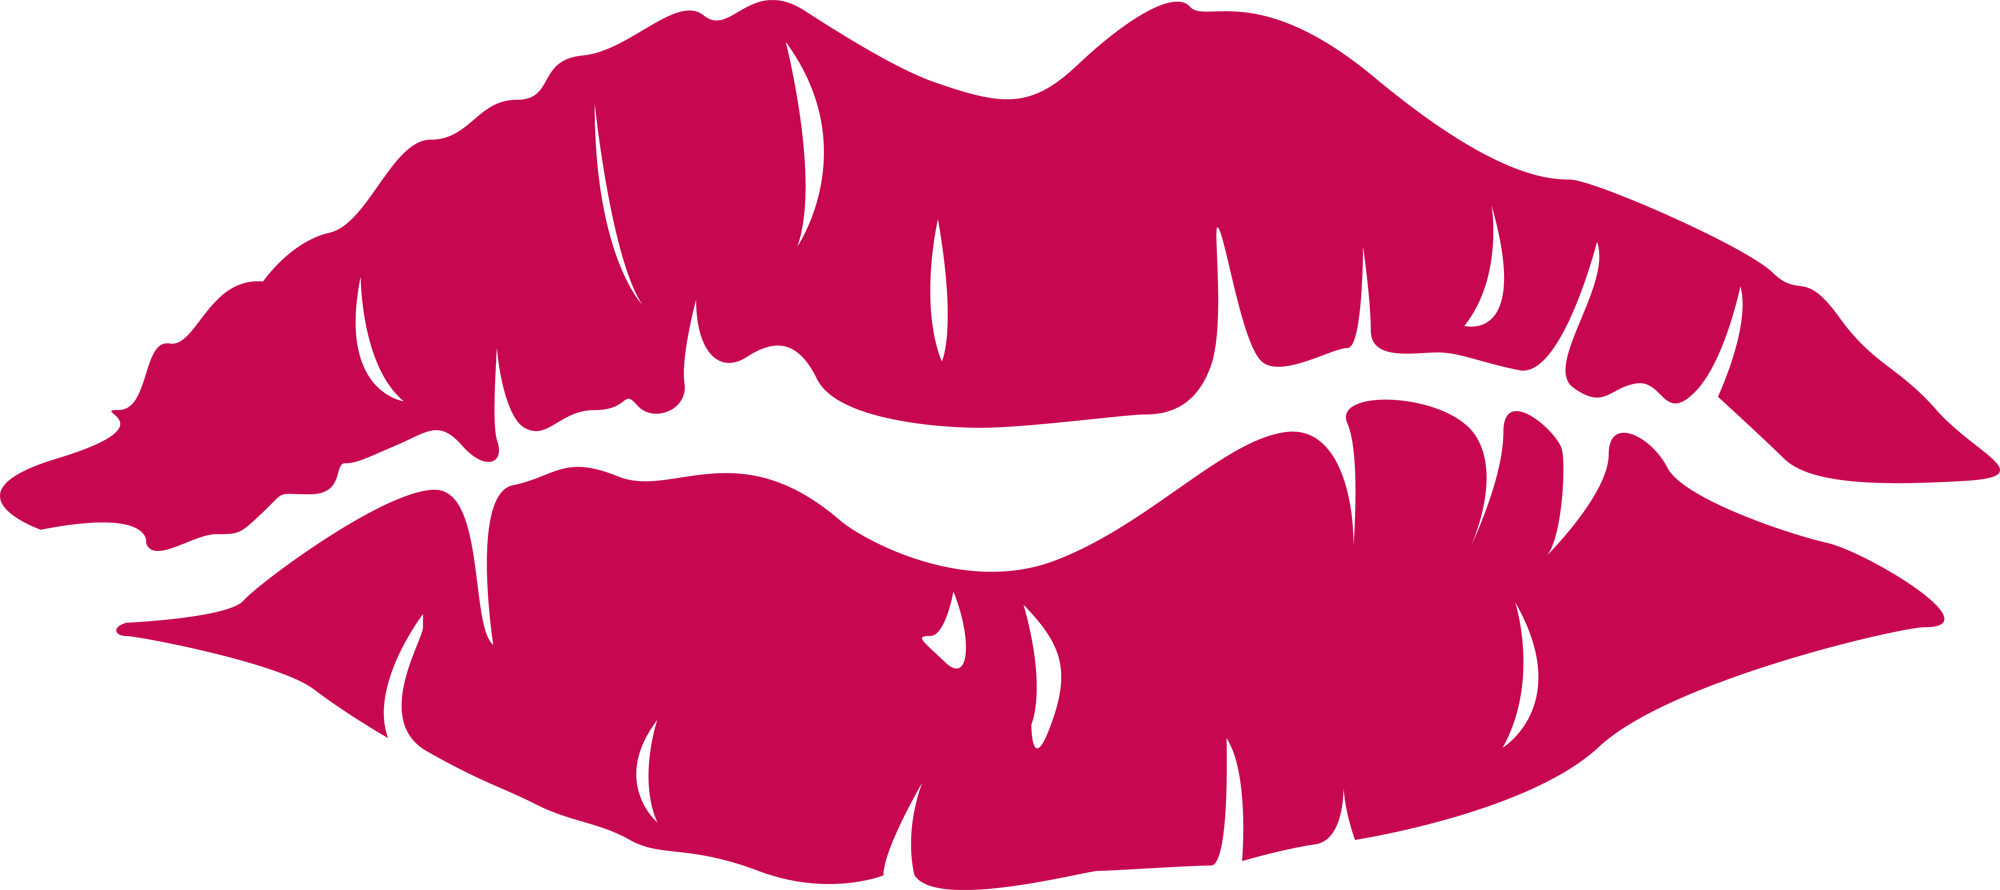 Red Cartoon Lips Clip Art - Lipstick Lips Cartoon.